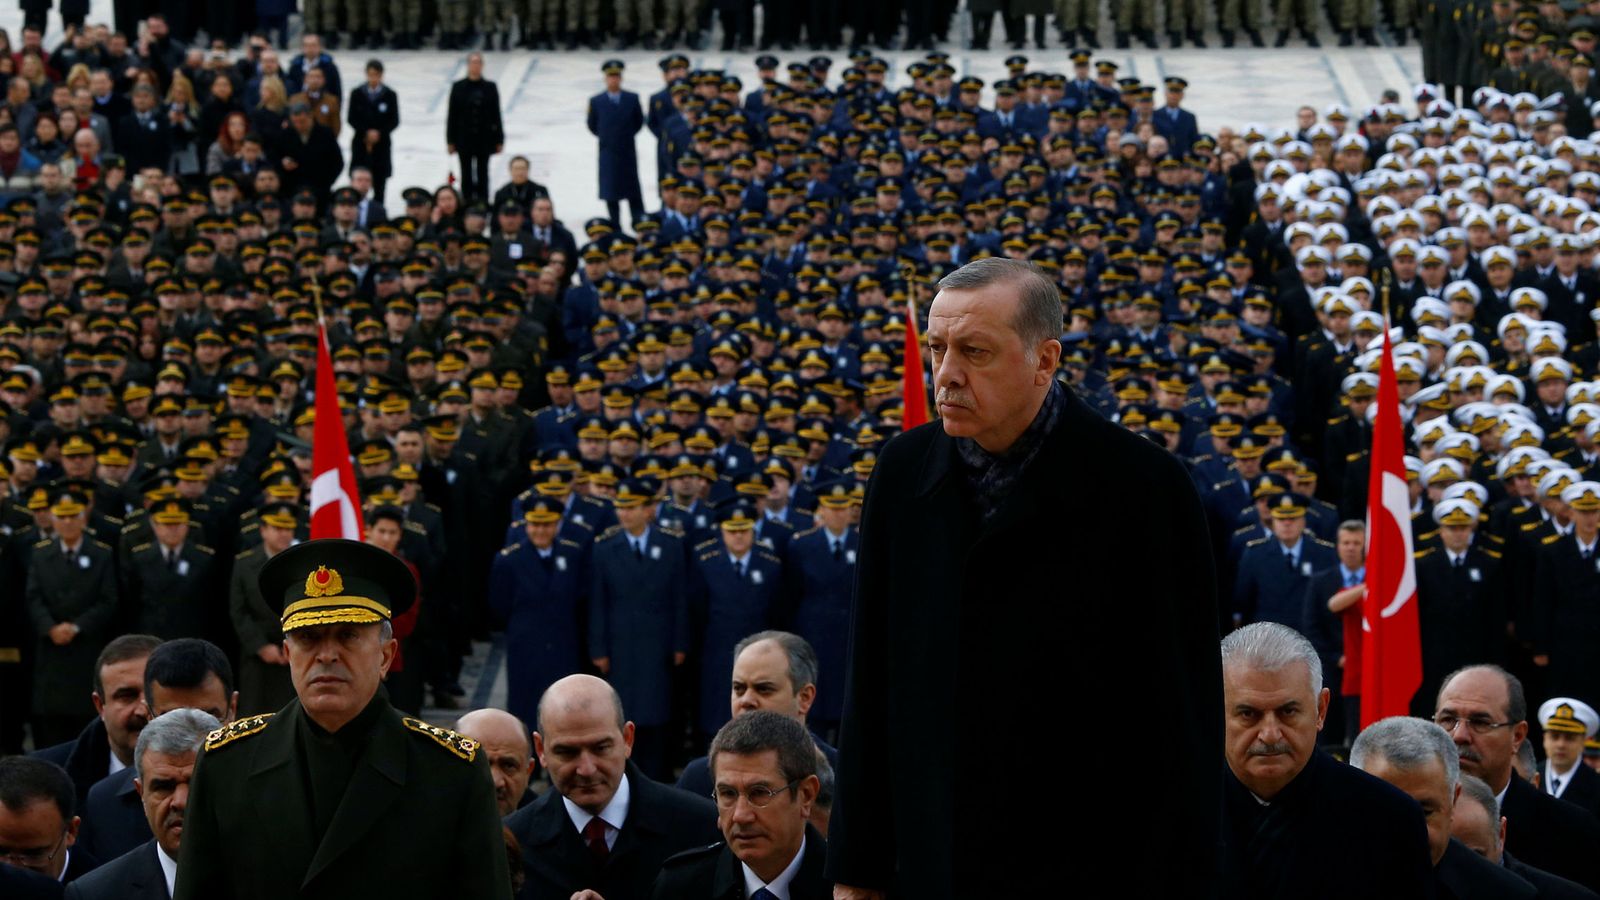 Foto: El presidente turco Erdogan frente a miembros de las Fuerzas armadas durante la celebración del aniversario de la muerte de Atatürk, el 10 de noviembre de 2016 (Reuters)